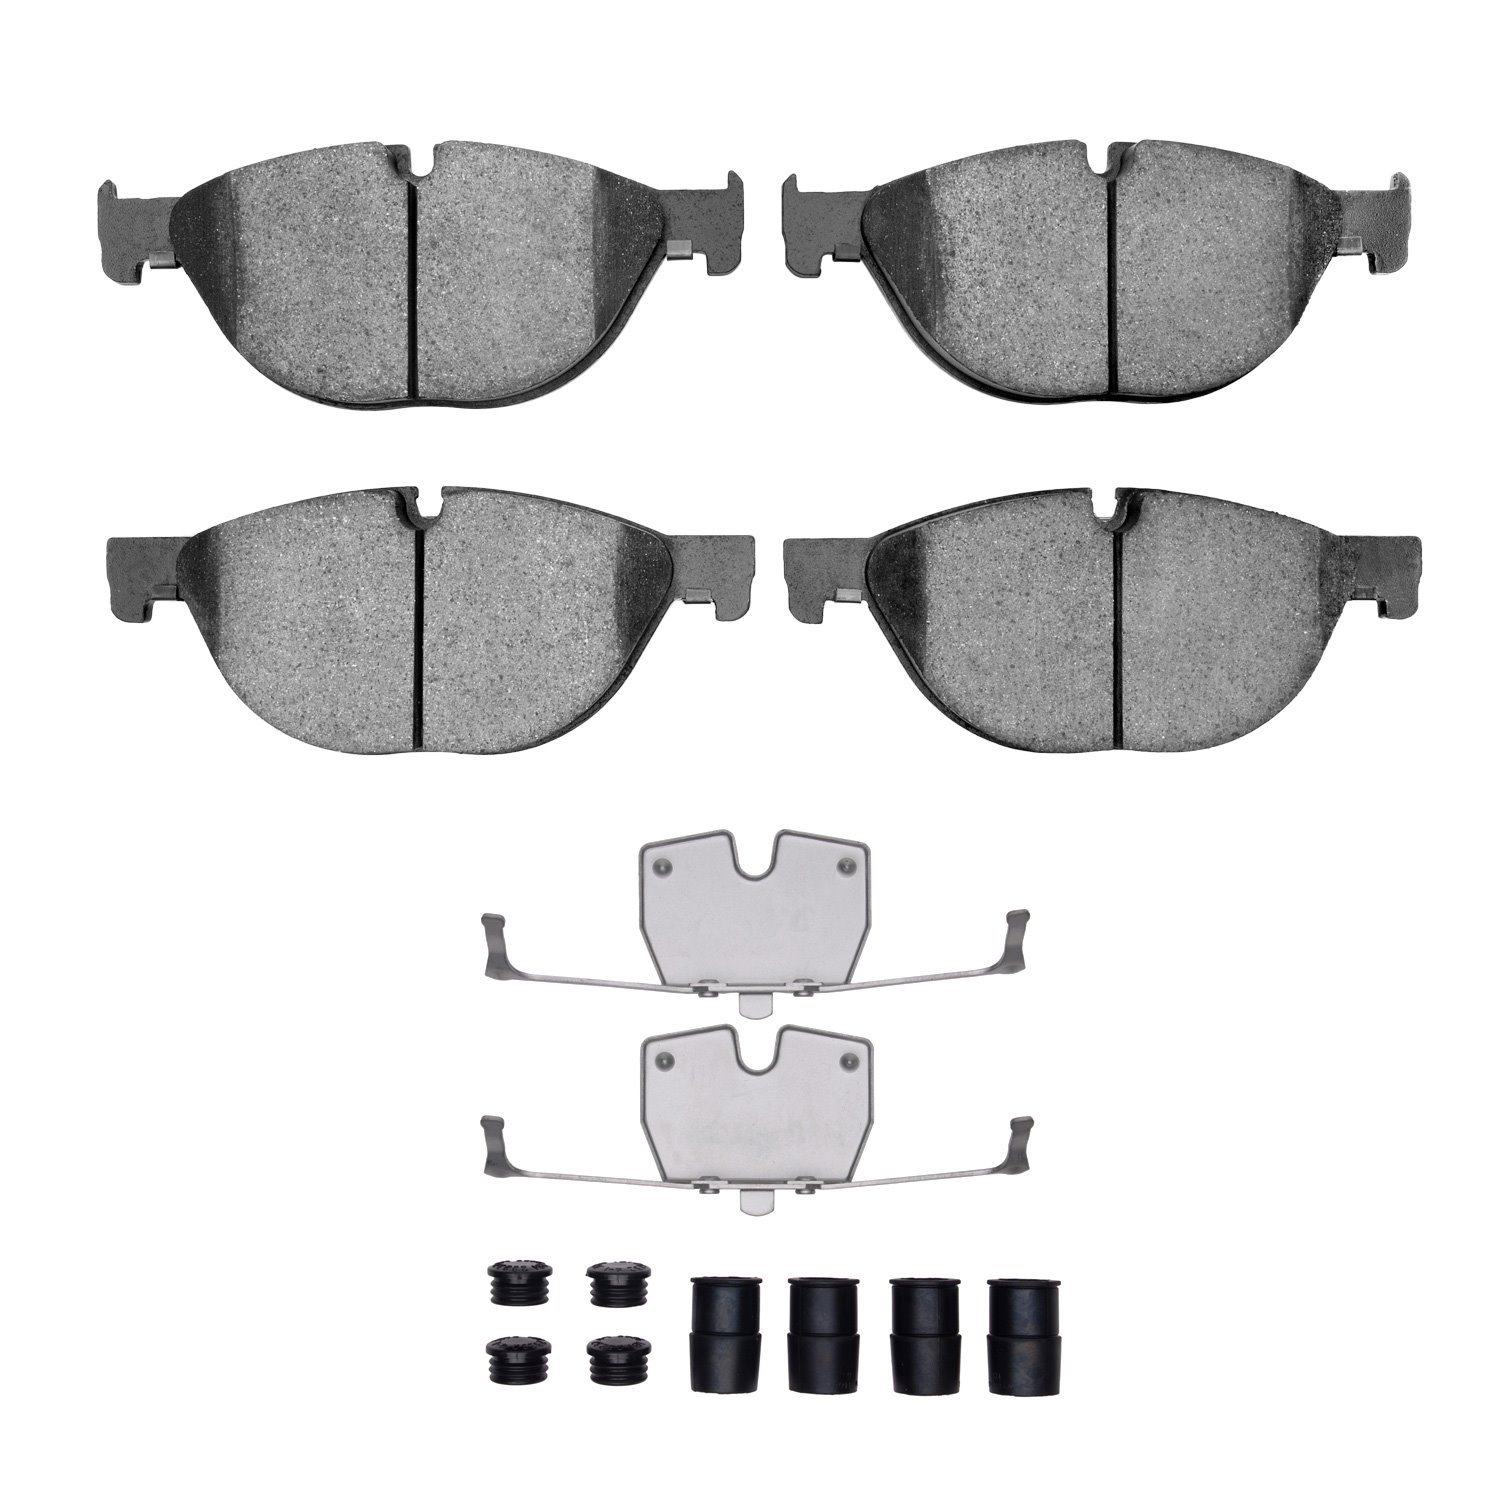 1551-1409-01 5000 Advanced Low-Metallic Brake Pads & Hardware Kit, 2009-2018 BMW, Position: Front